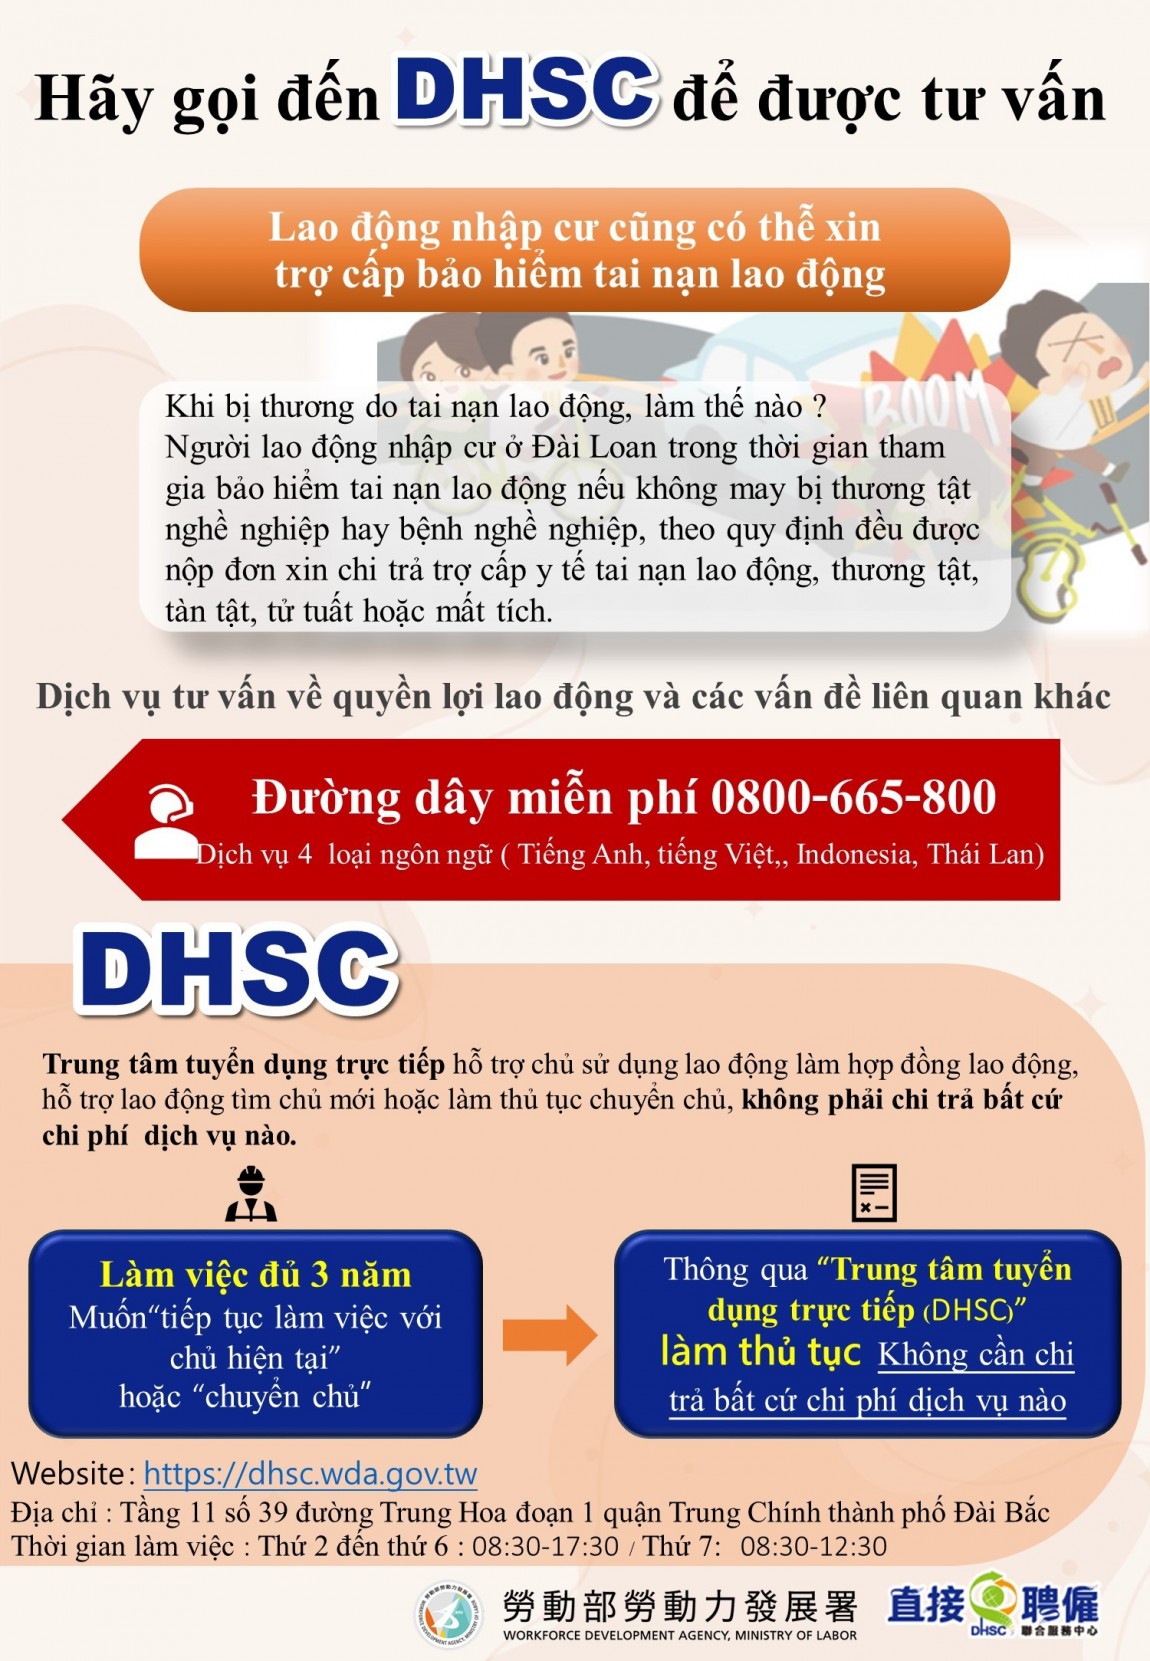 如何申請勞工職災給付+請來電諮詢DHSC-越南文版